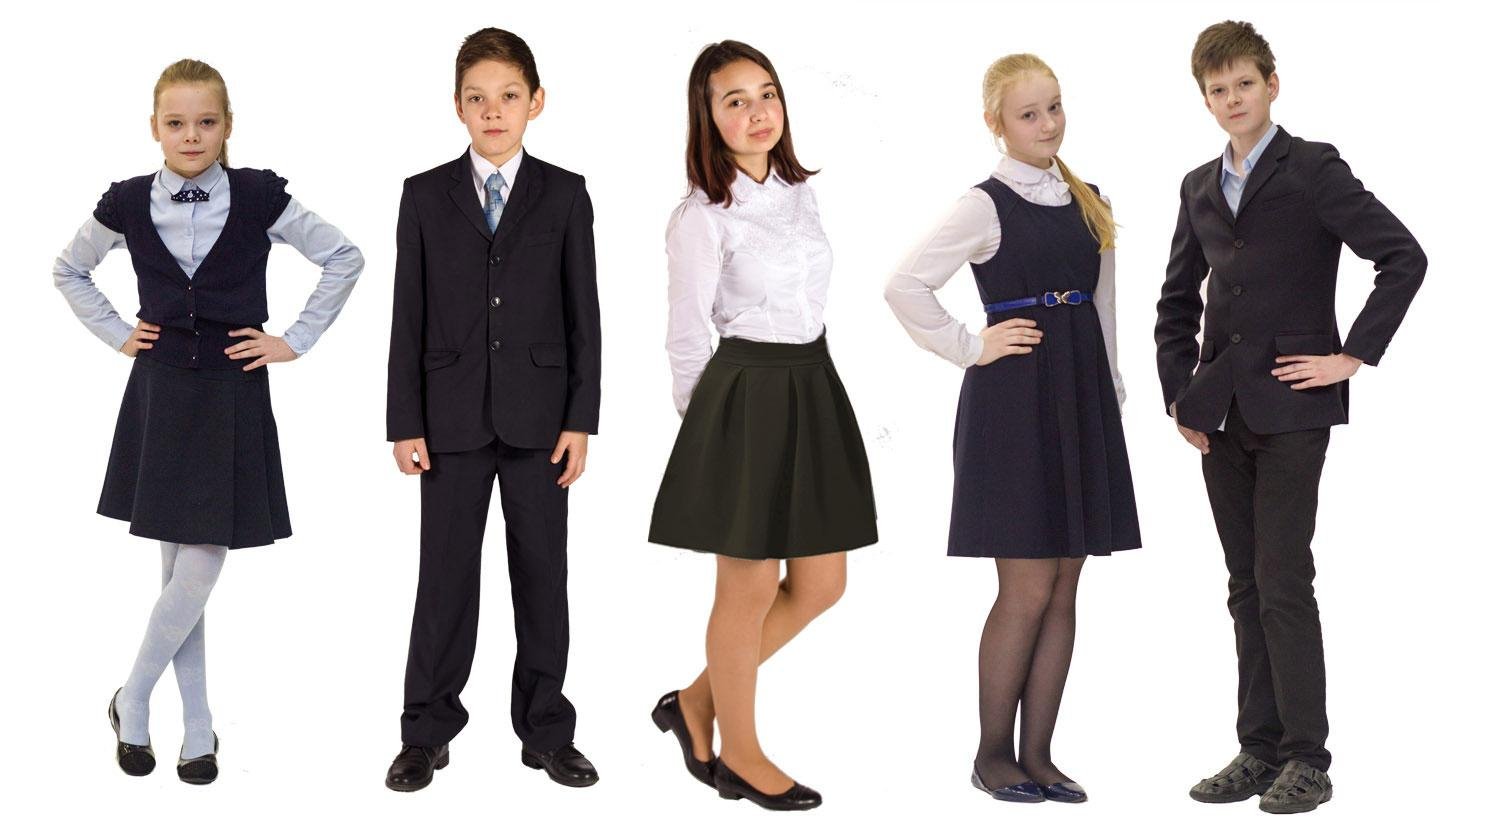 Школьный вб. Деловой стиль одежды для школьников. Школьная форма. Классический стиль одежды в школе. Форменная одежда для школьников.